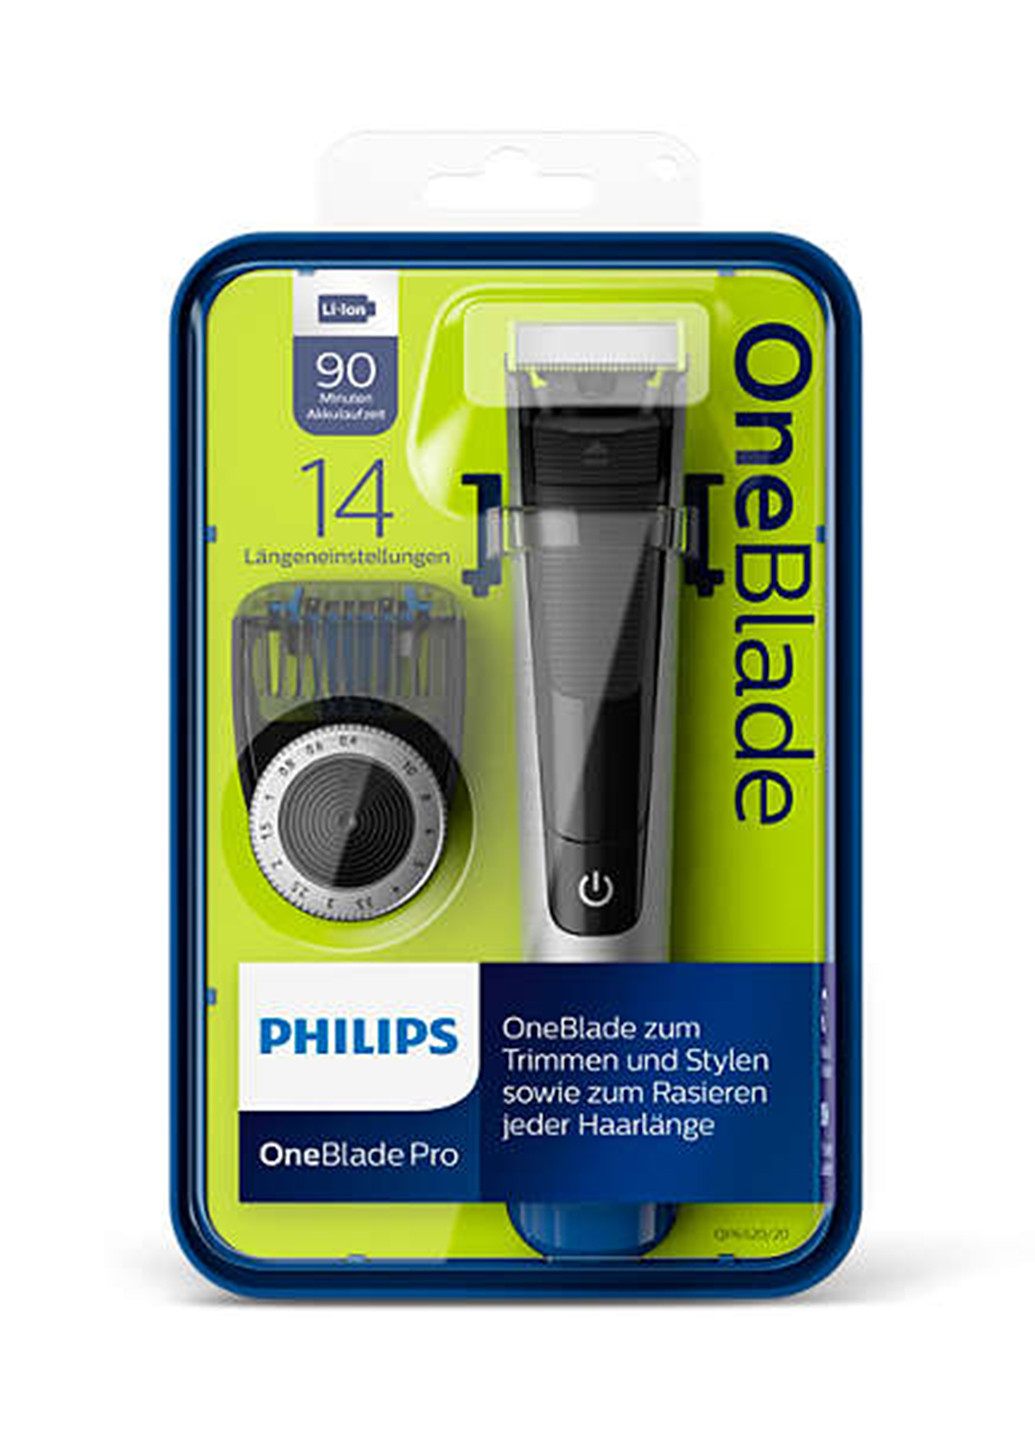 Тример OneBlade Pro QP6520 / 20 Philips qp6520/20 (154815551)